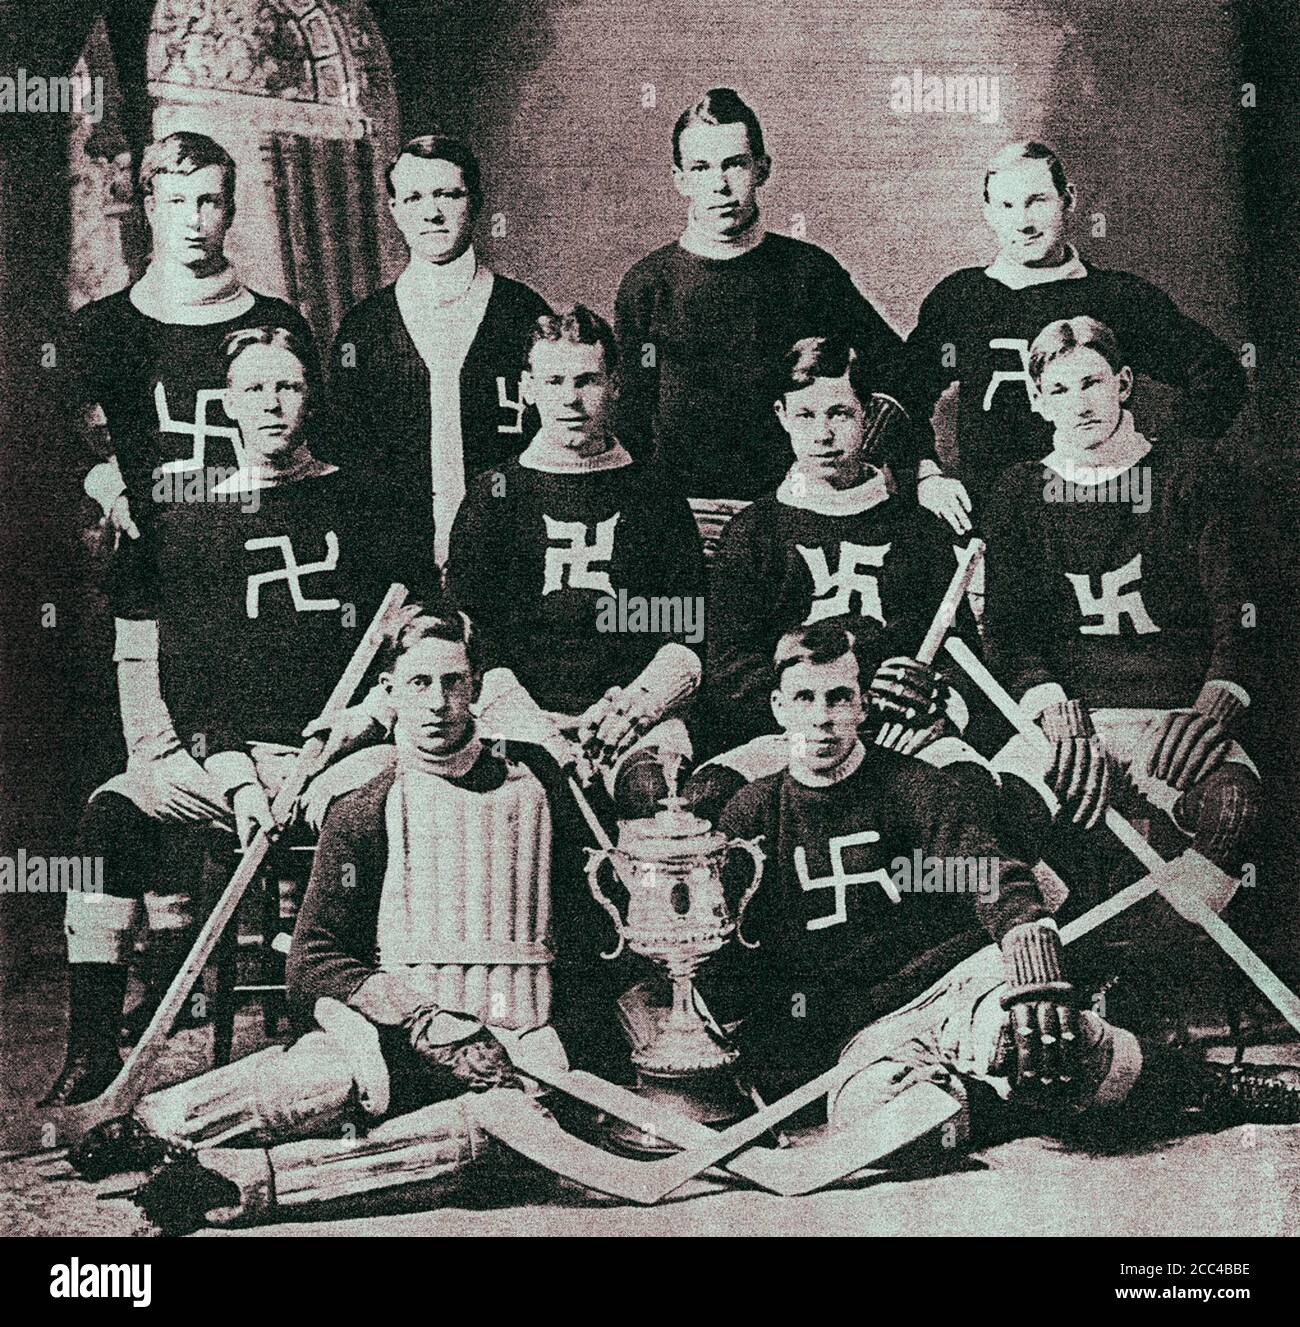 Photo rétro d'une équipe canadienne de hockey avec un signe de la croix gammée sur ses chandails. 1910s Banque D'Images